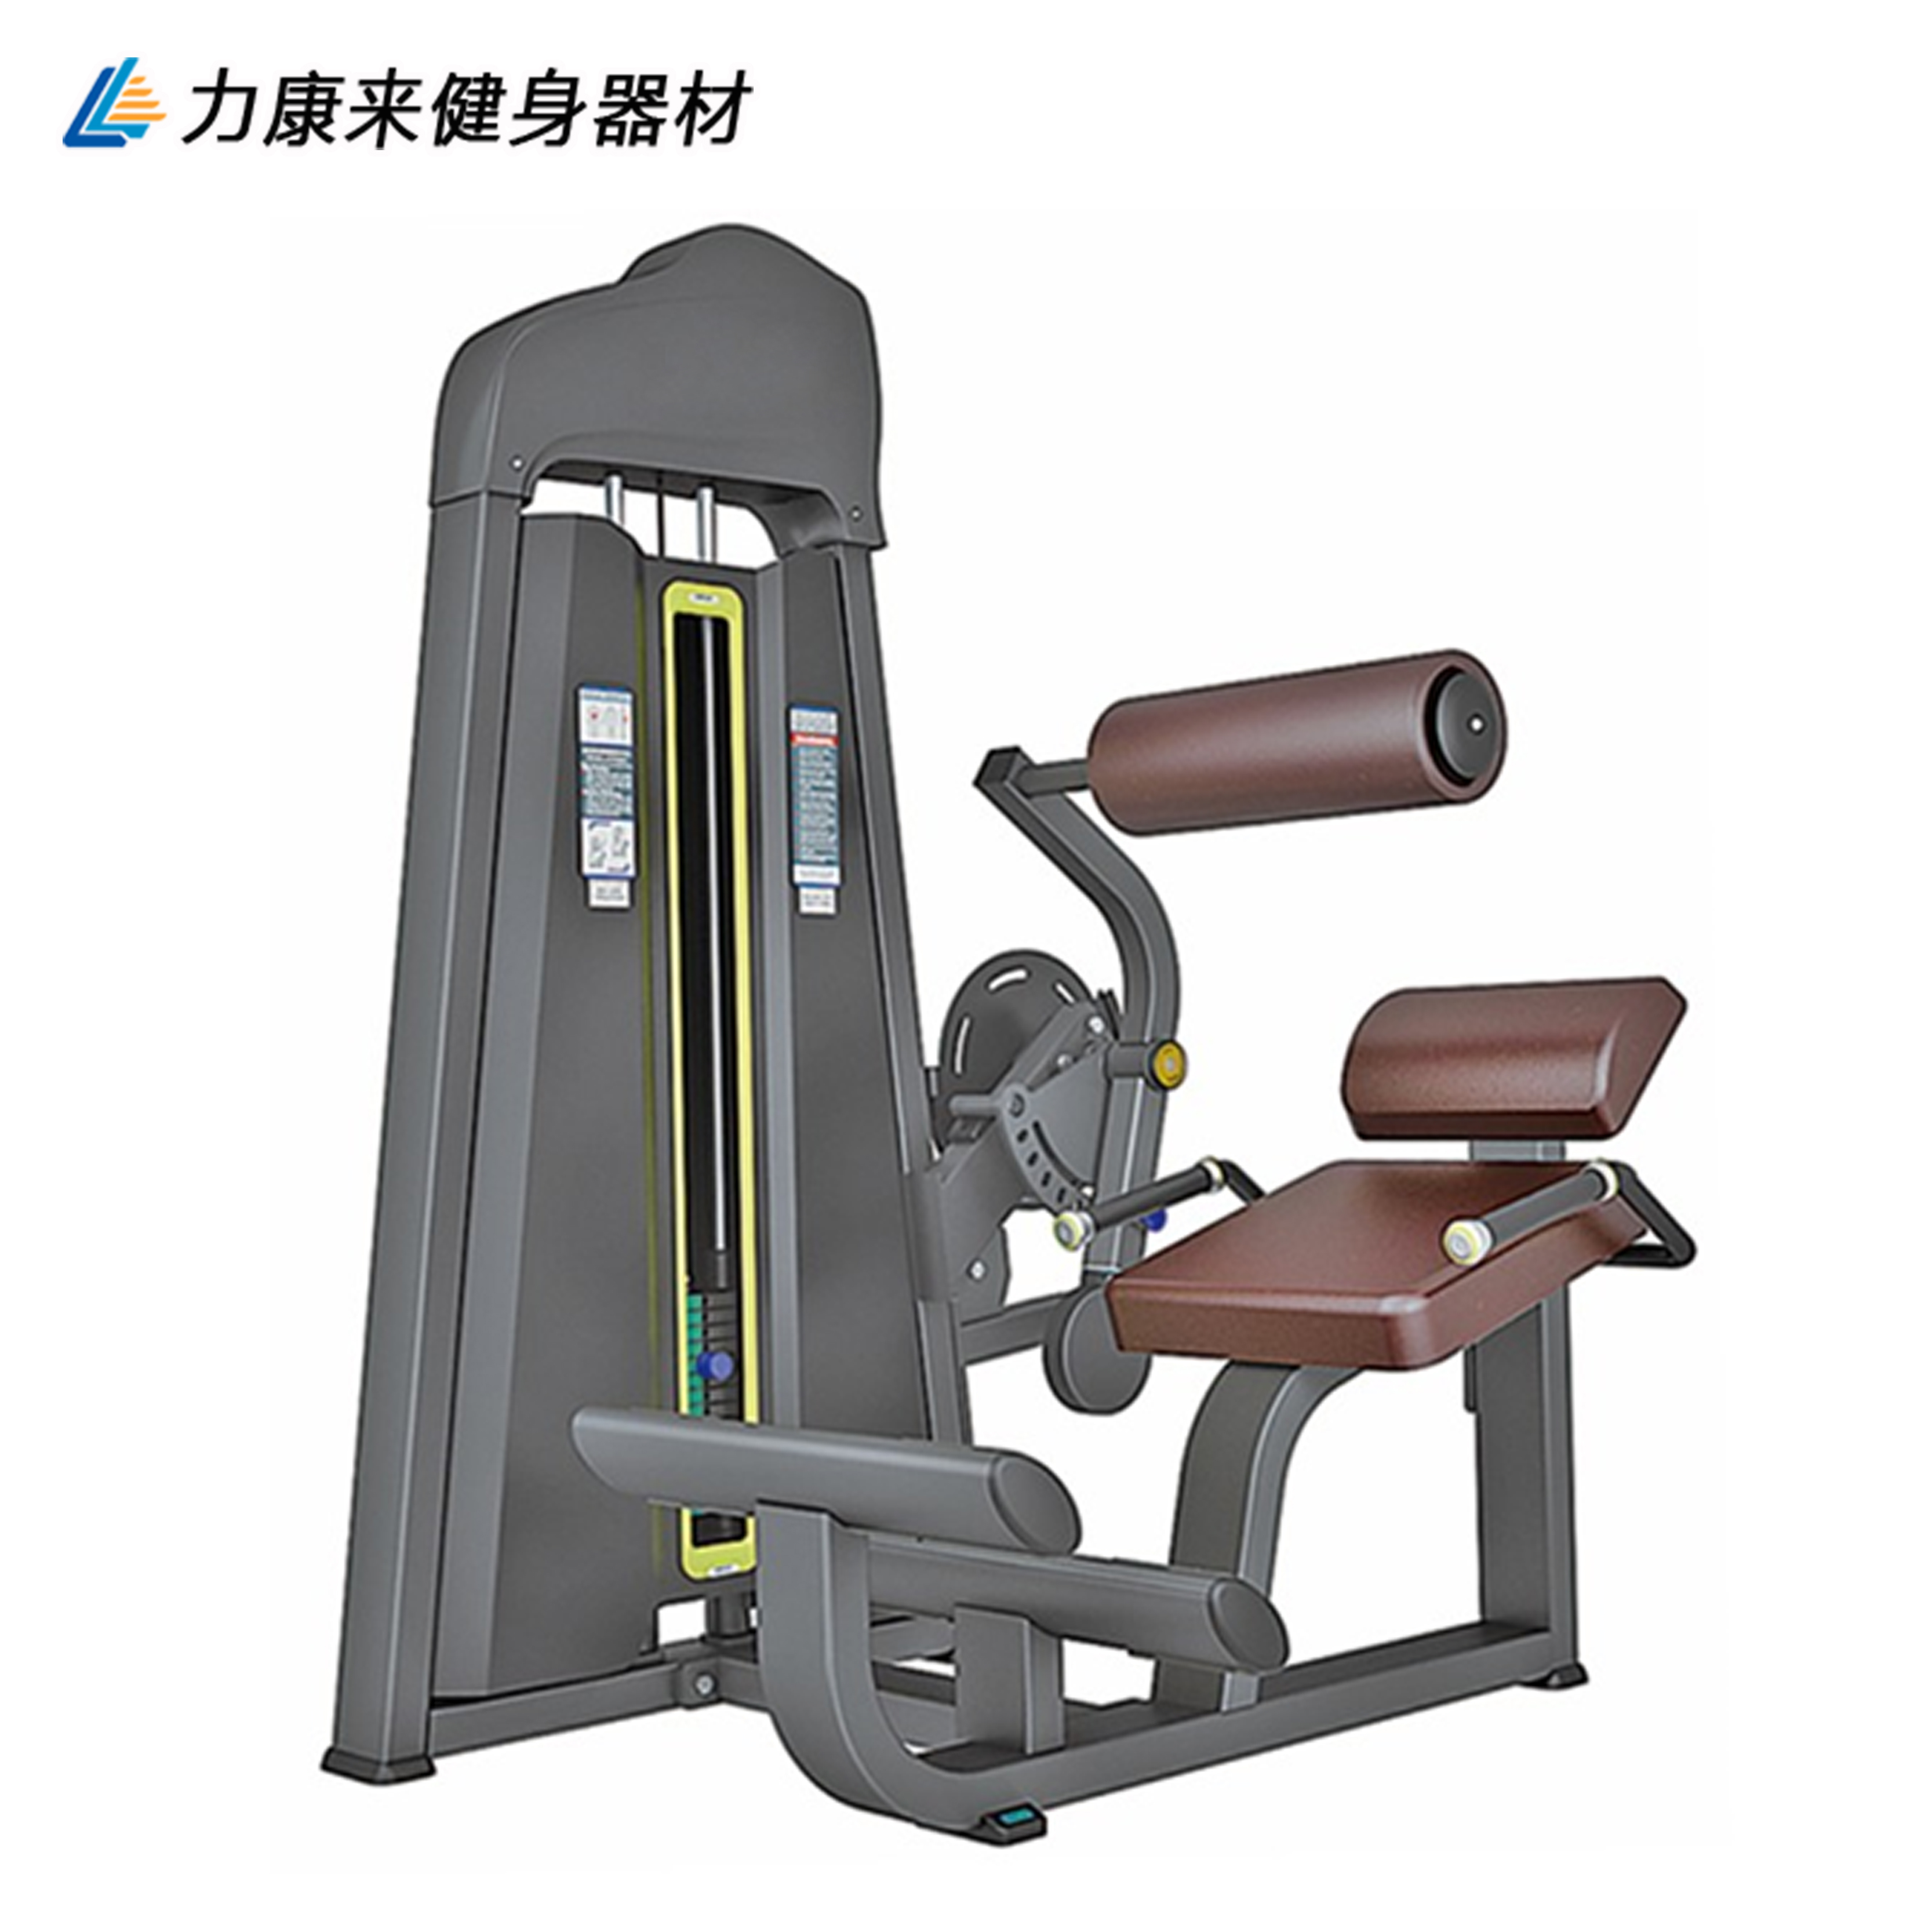 商用腹部前屈训练器 必确系列健身器材 健身房专用固定器械